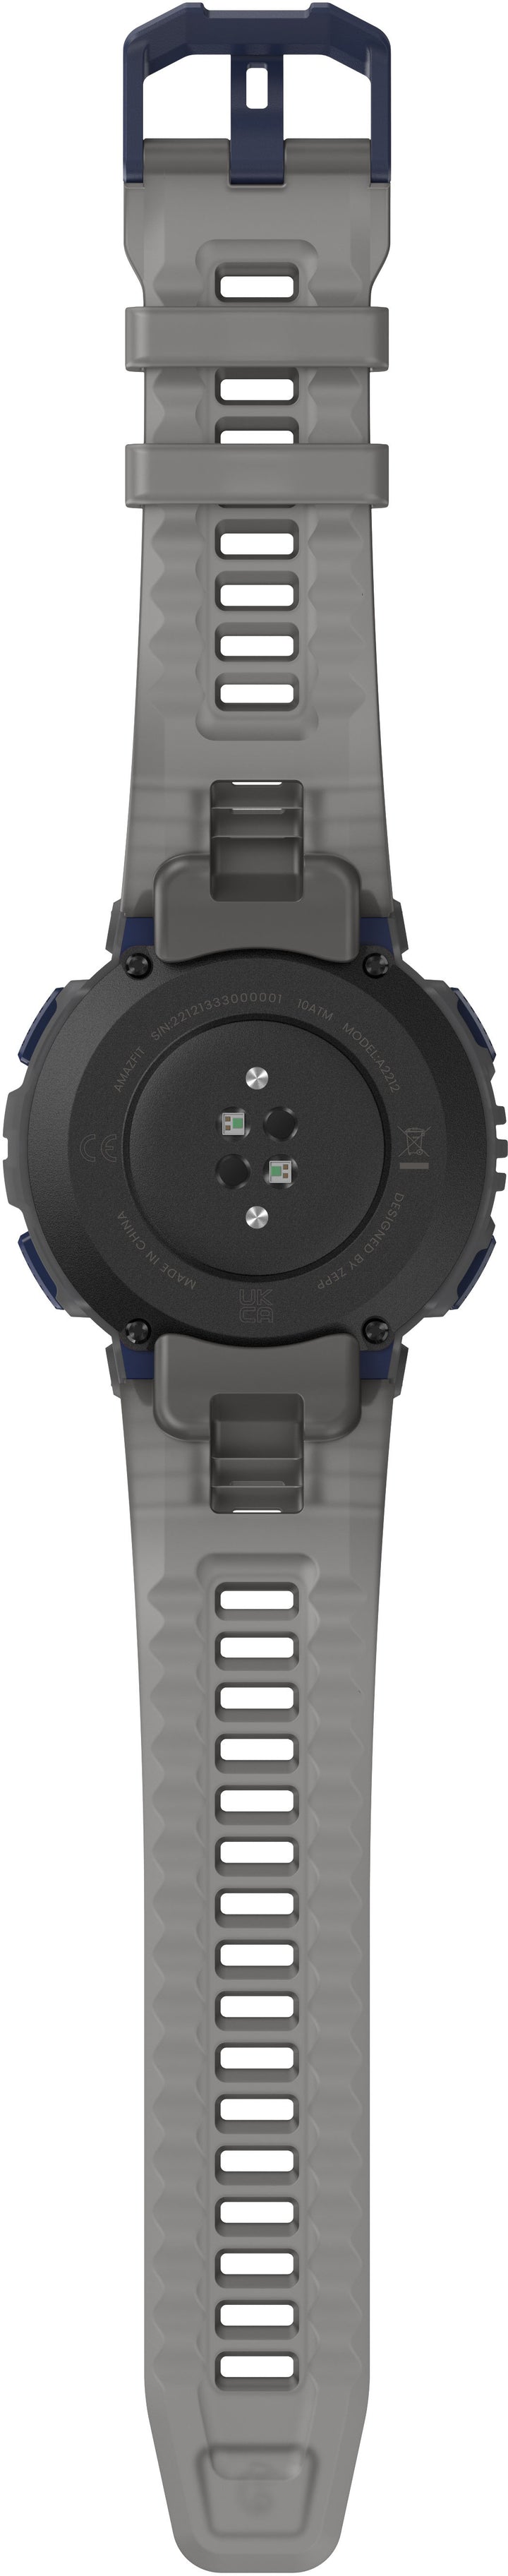 Amazfit Active Edge Smartwatch - Gray_4